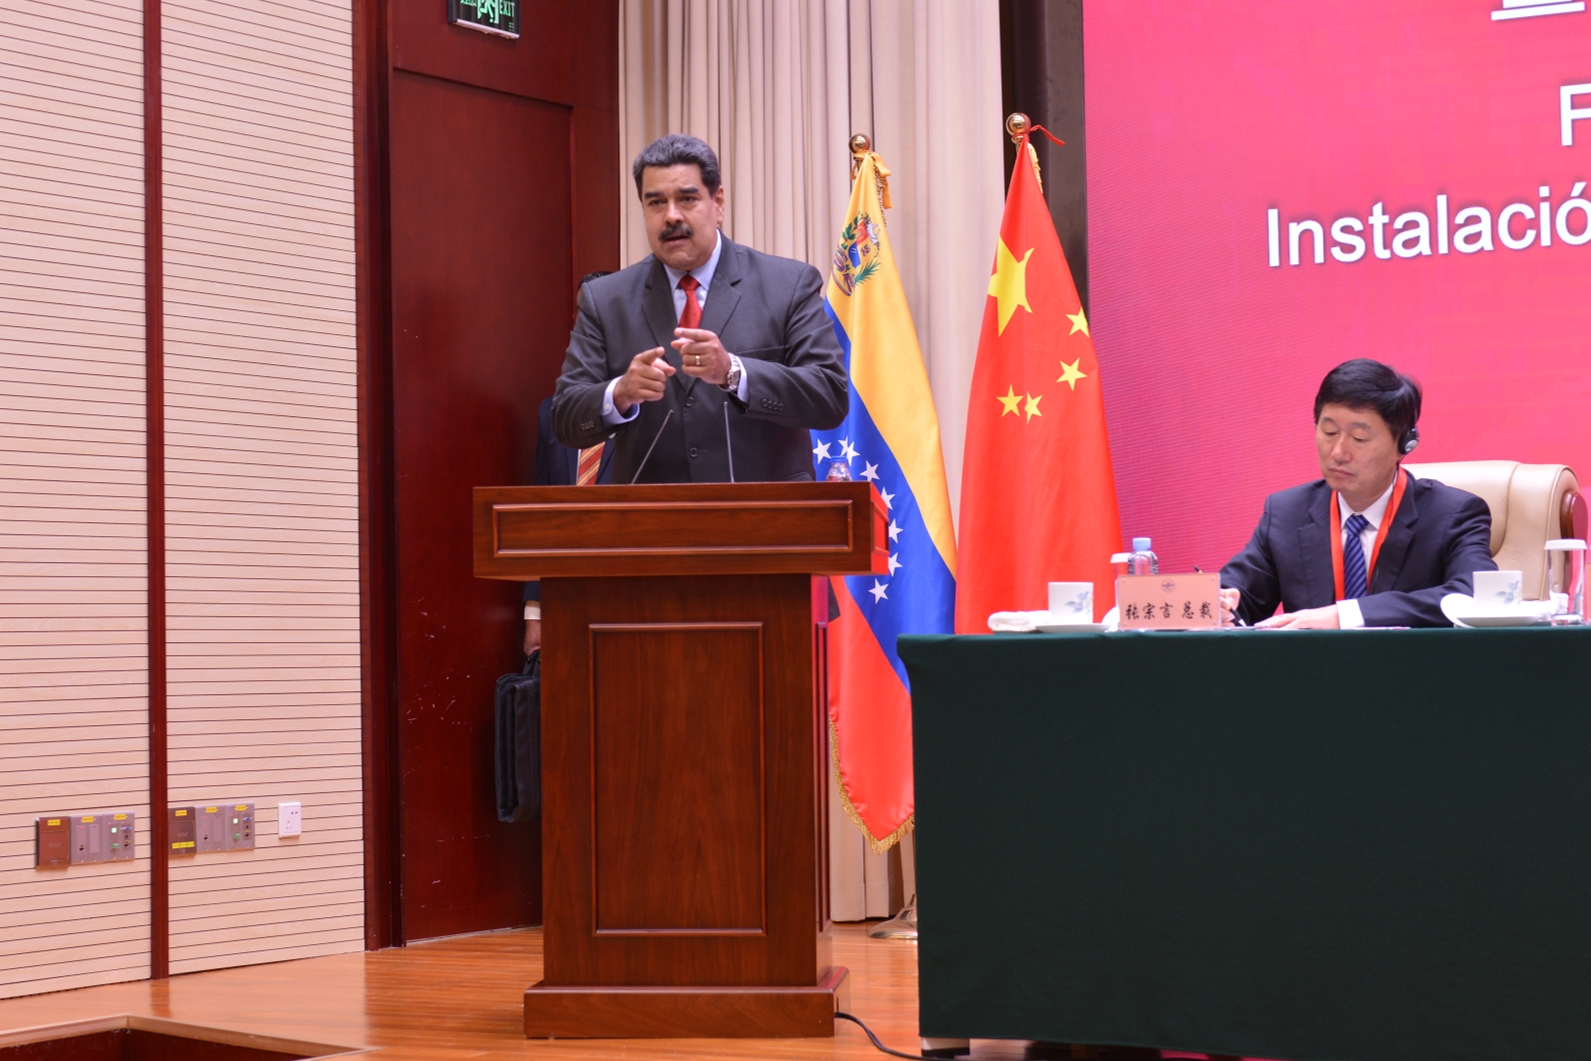 马杜罗:委内瑞拉需要中国投资,将保护好中企利